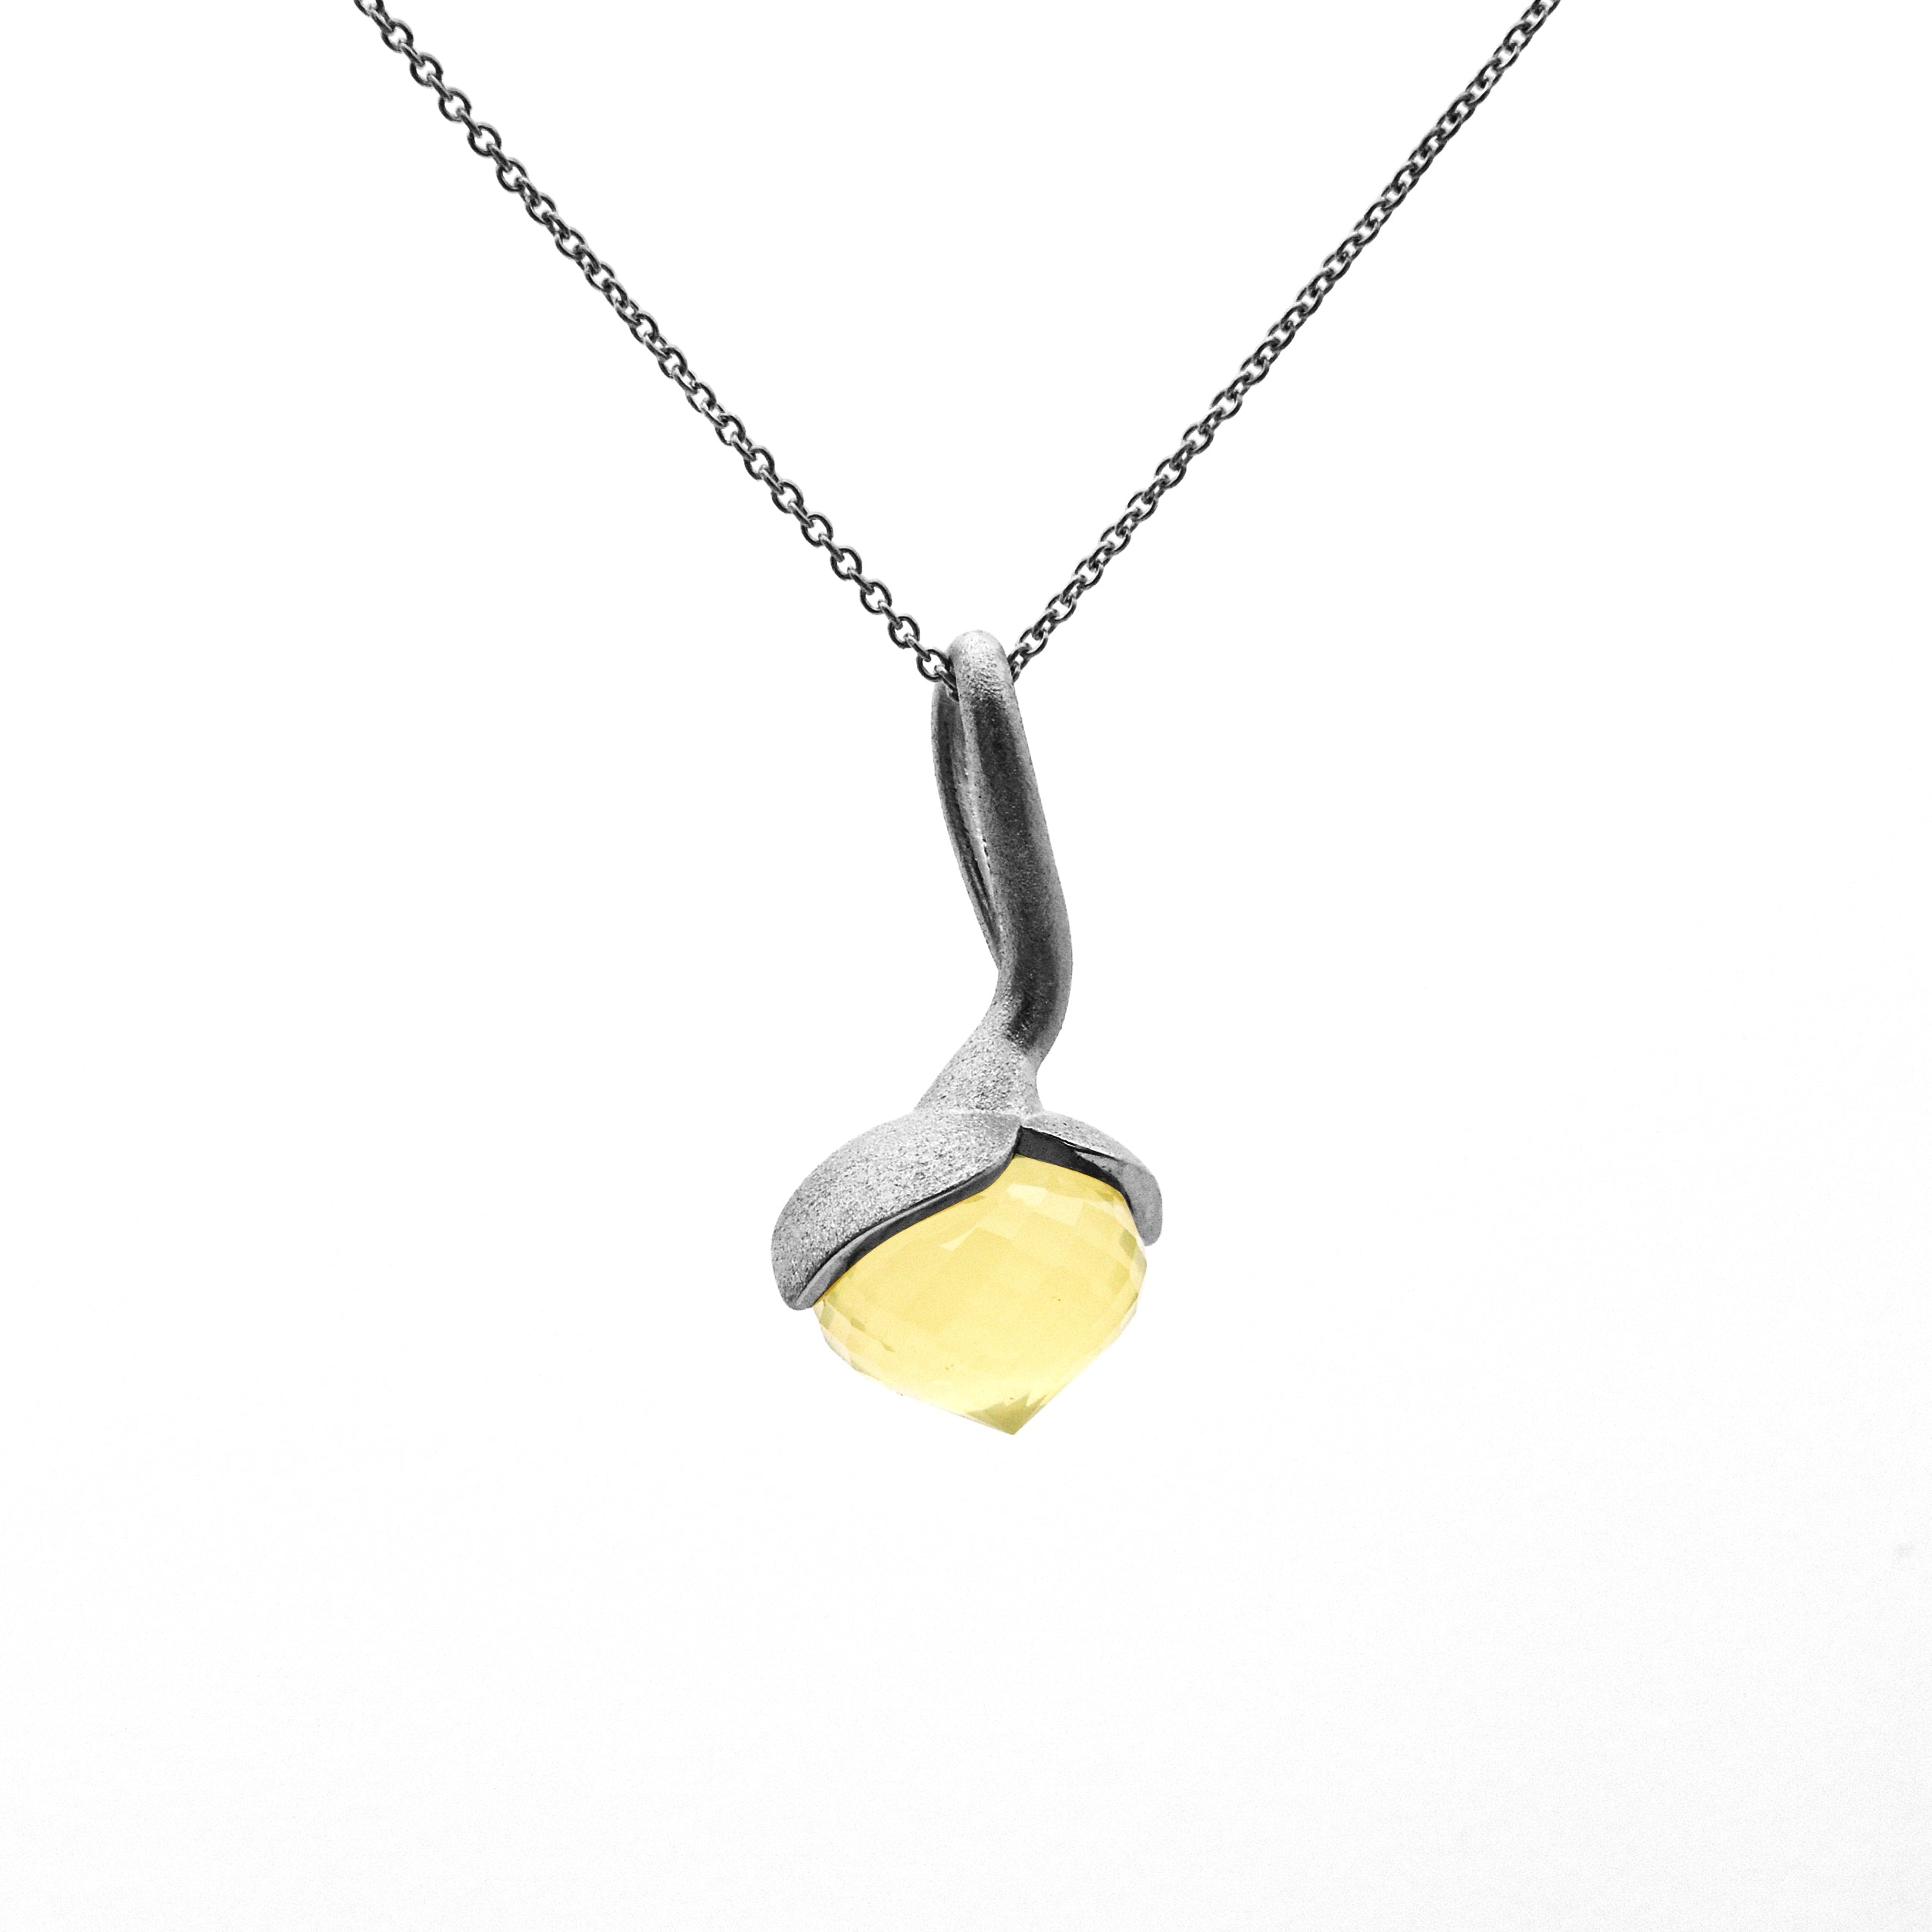 Dolce pendant "big" with lemon quartz 925/-